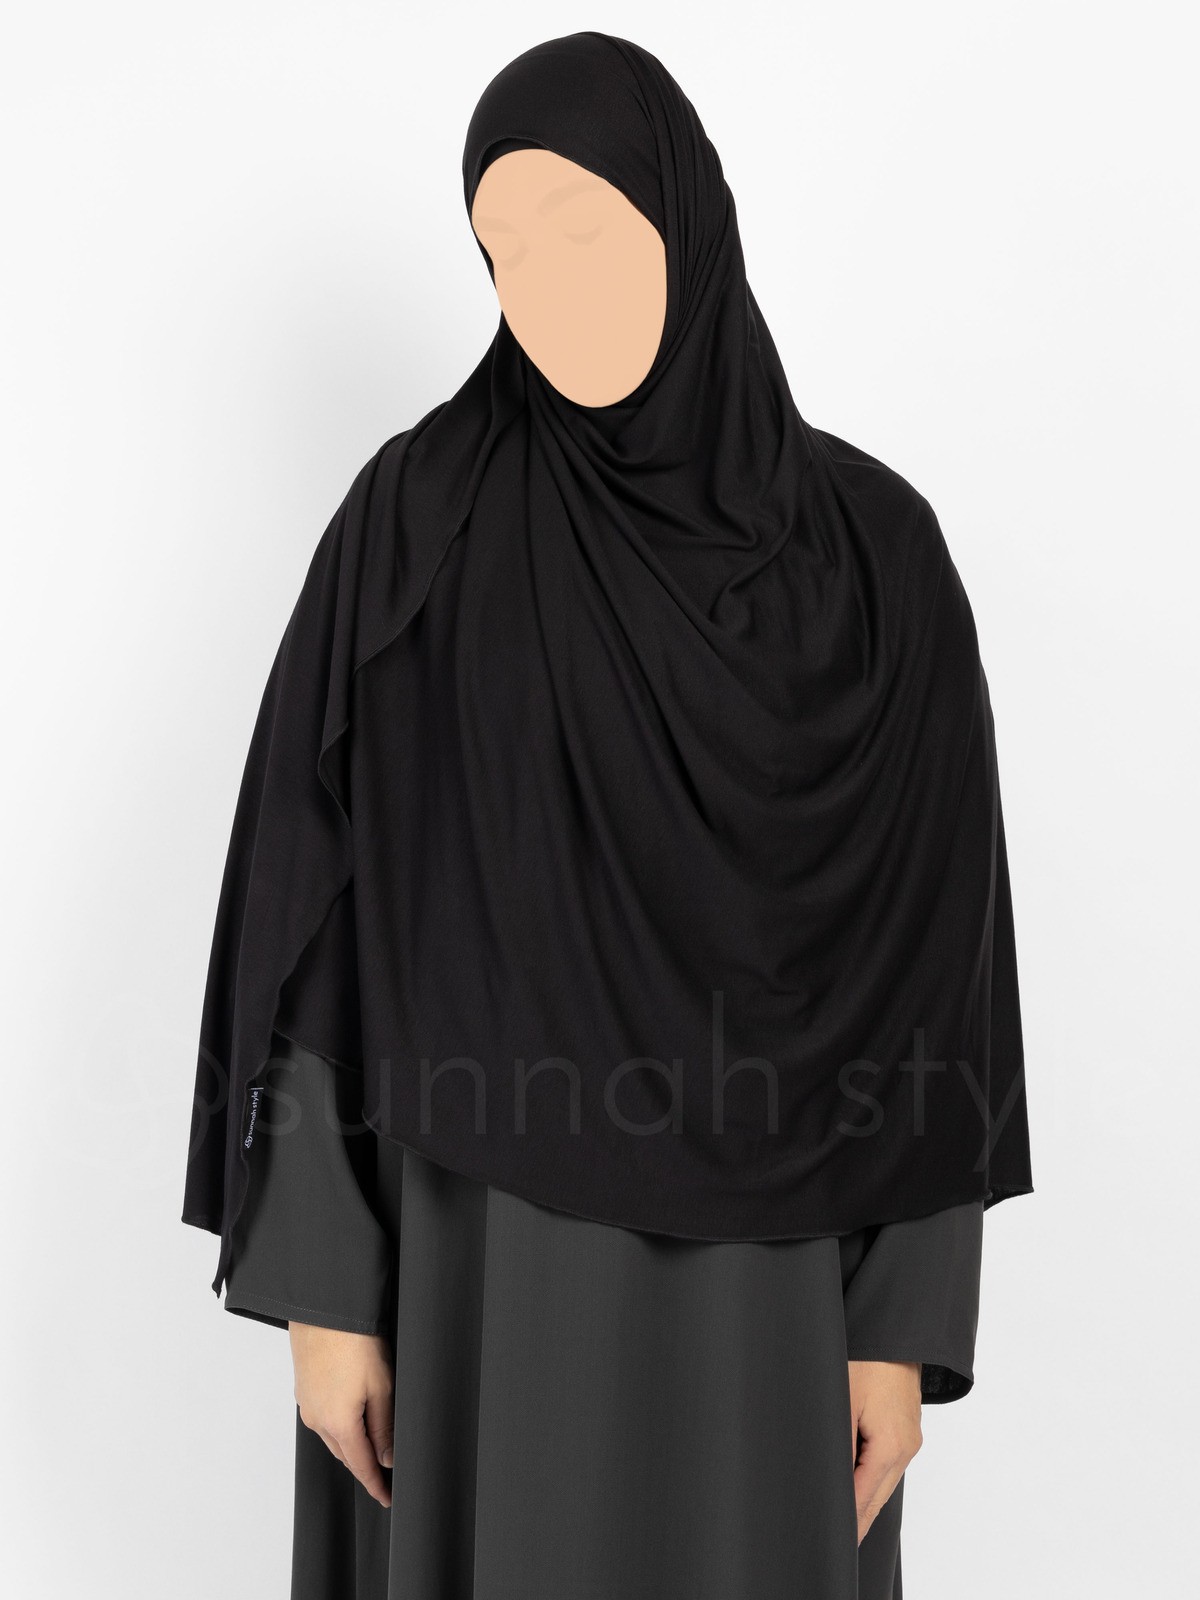 Sunnah Style - Urban Shayla (Soft Jersey) - XL (Black)